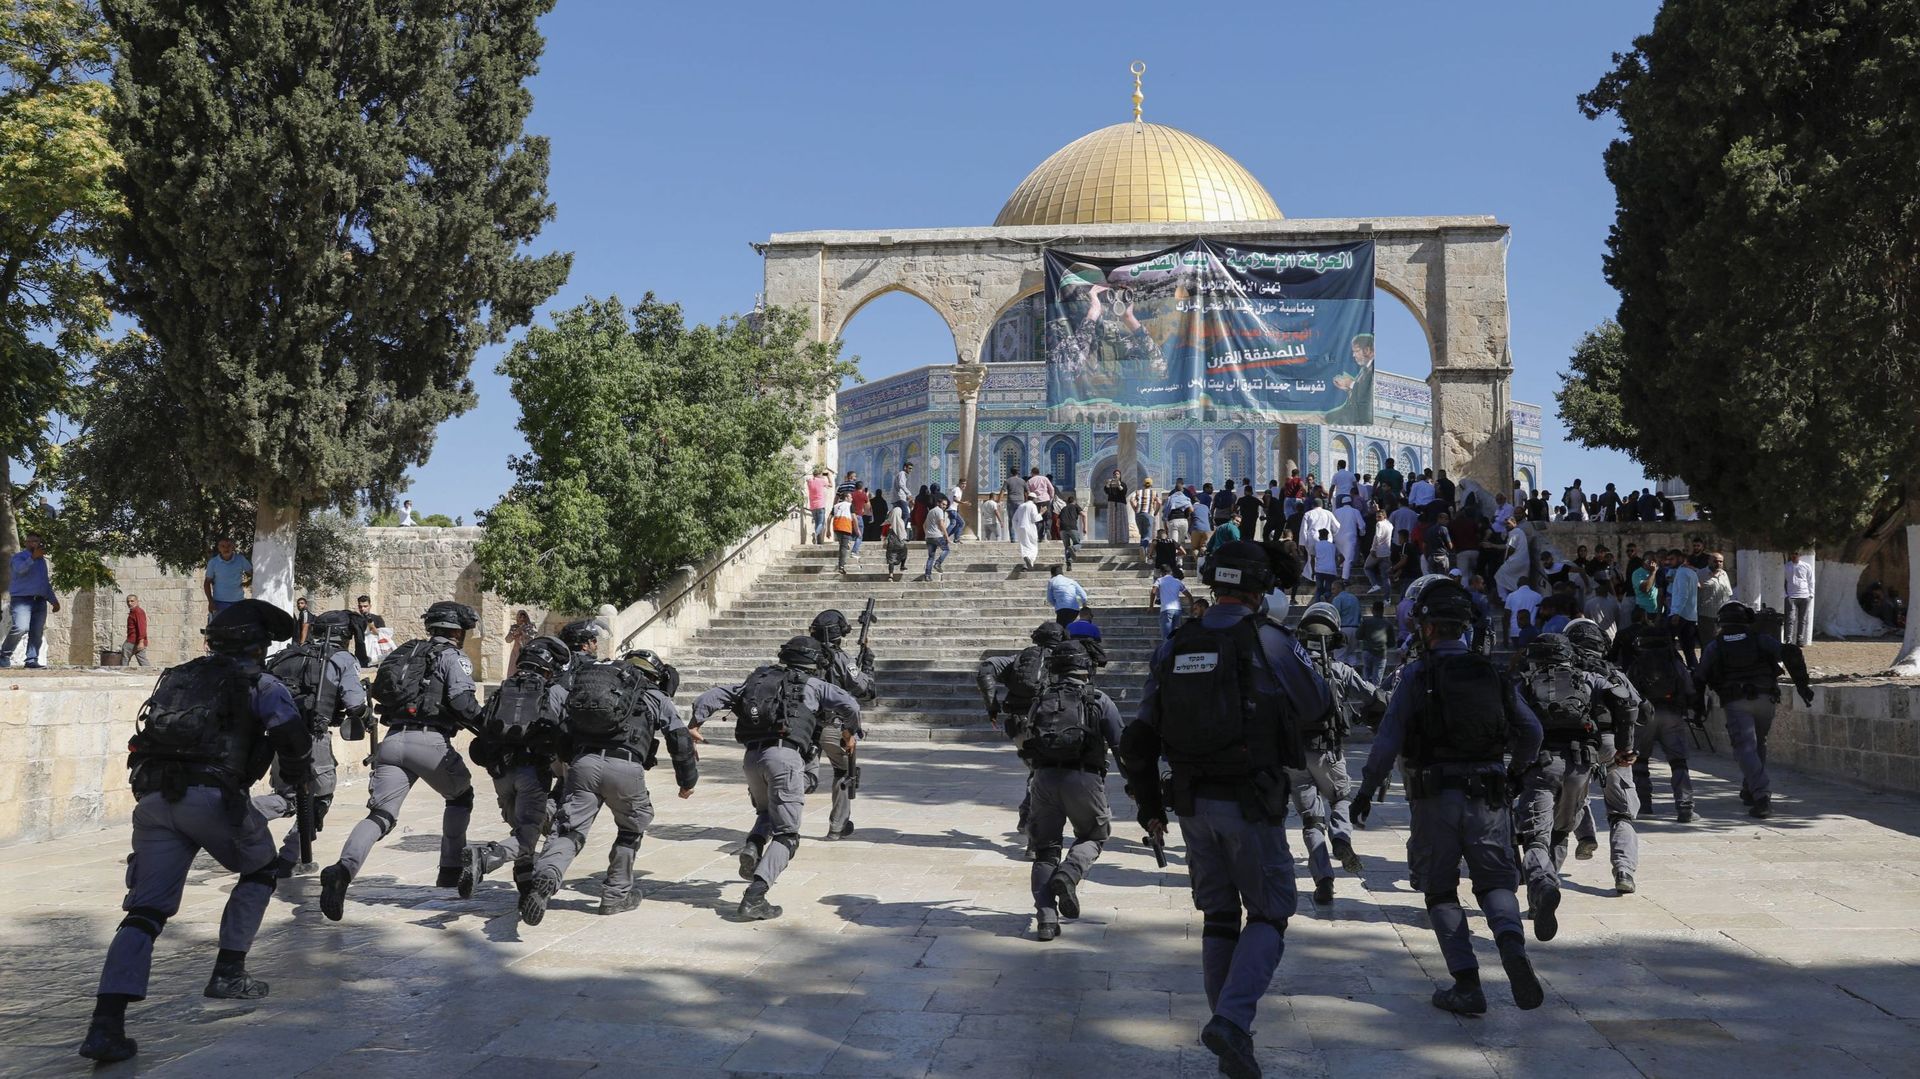 Tensions sur l'esplanade des Mosquées à Jérusalem, 61 palestiniens blessés